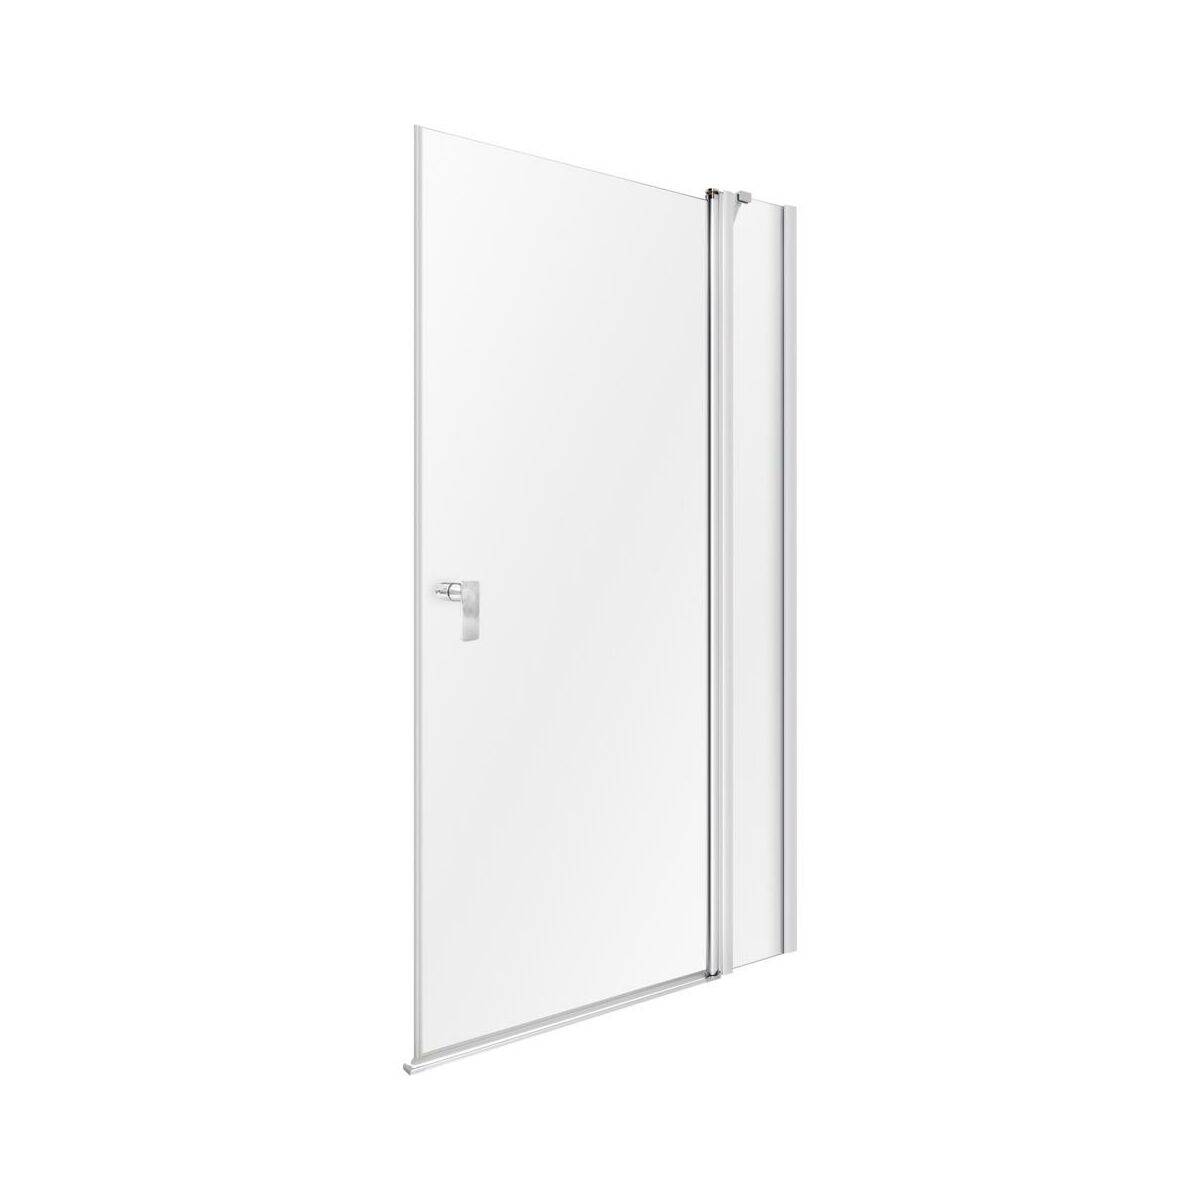 Drzwi prysznicowe X2 Flex 75.5-77 X 200 Huppe